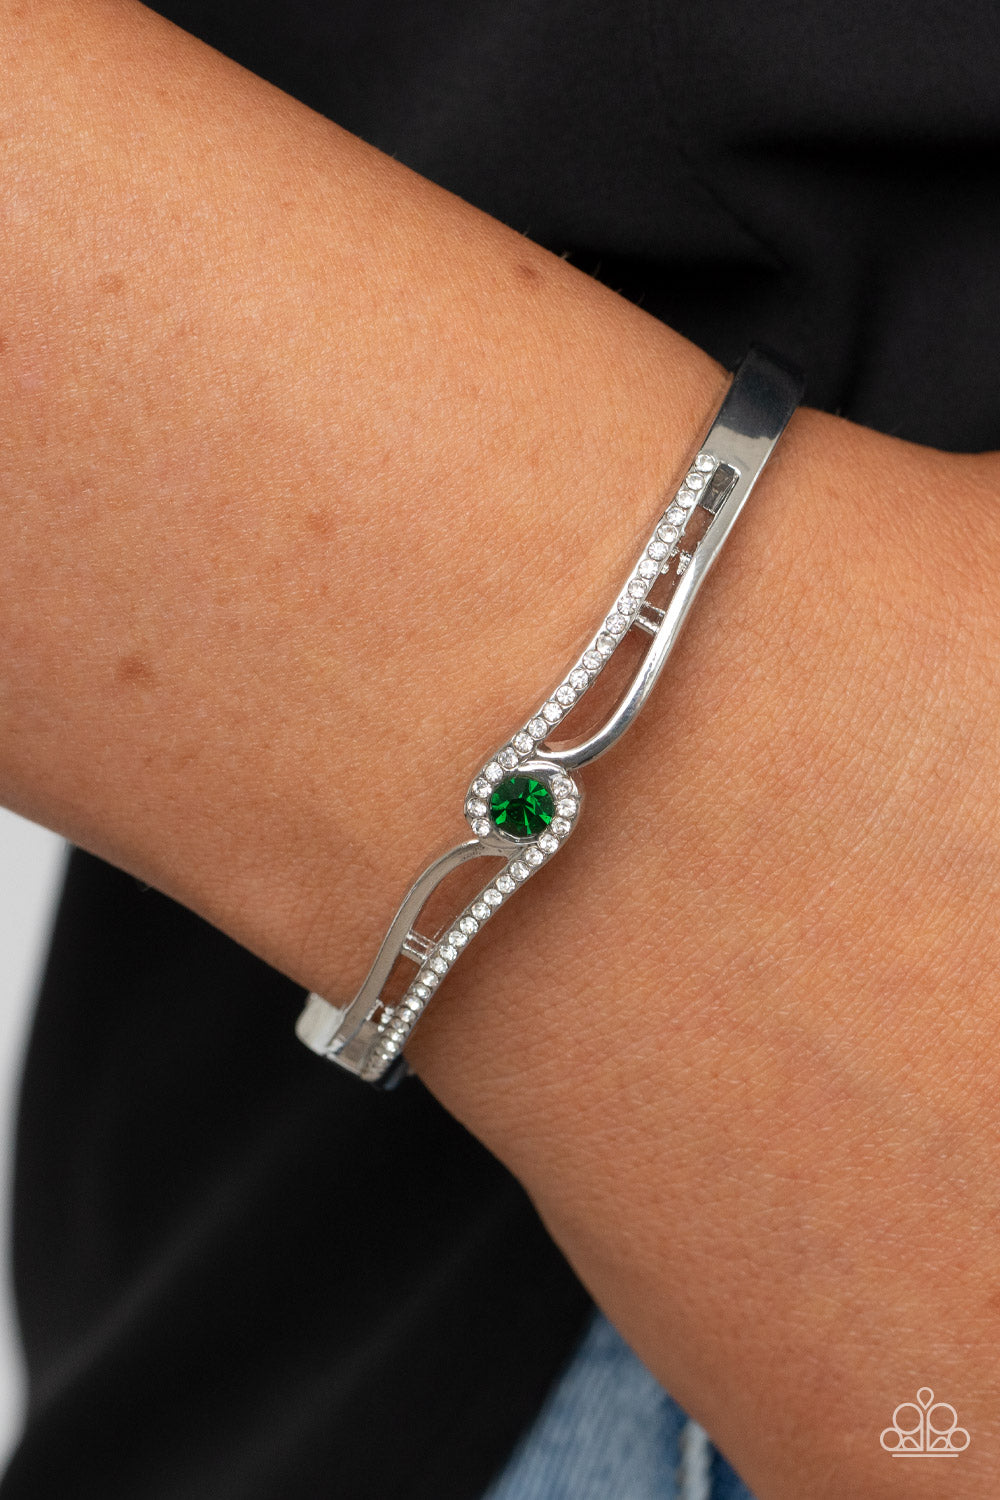 Top-Shelf Shimmer Green Bracelet